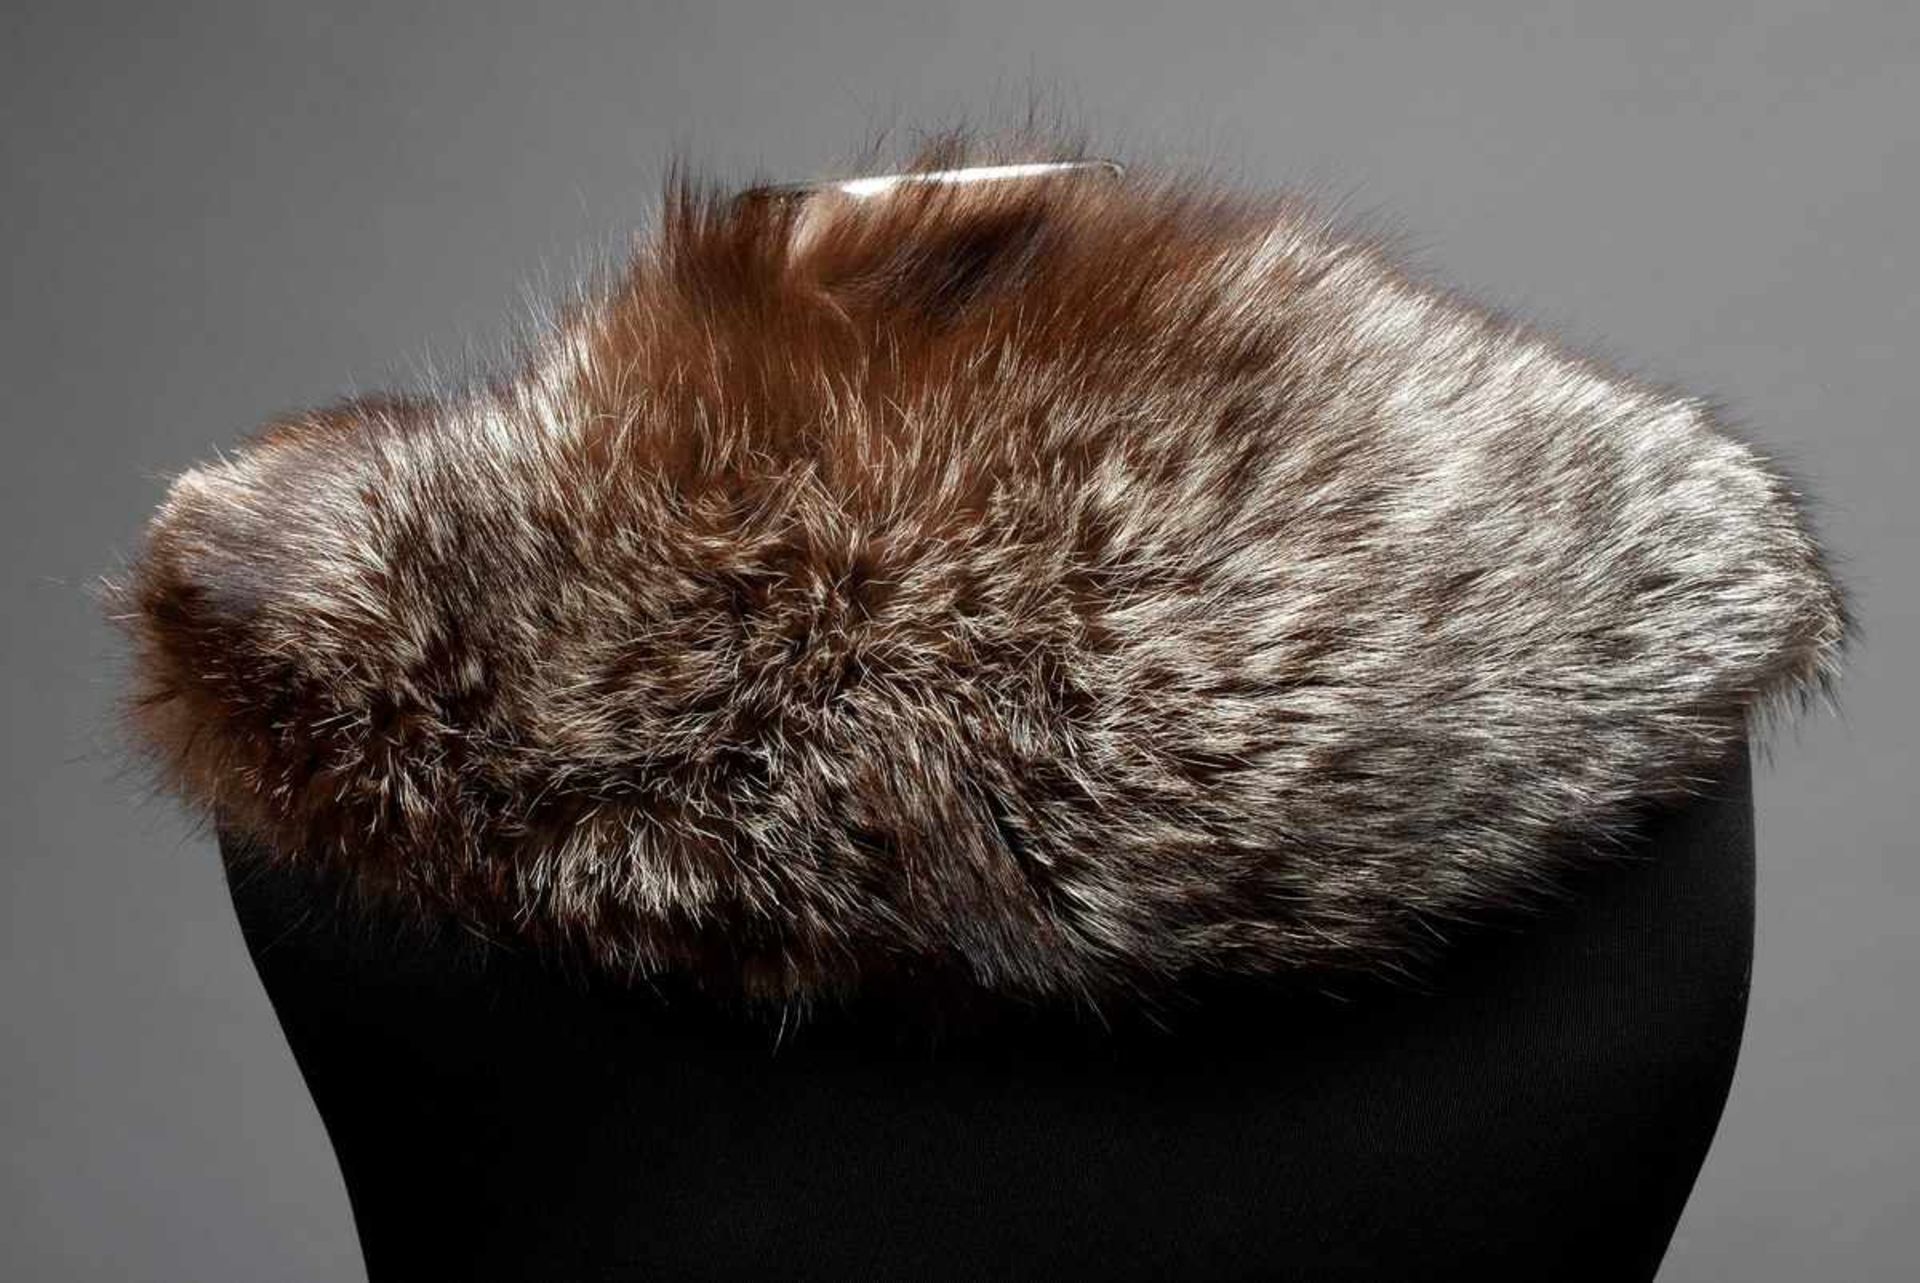 Silberfuchs Kostümkragen, gefüttertSilver fox collar for woman's suit- - -16.00 % buyer's premium on - Bild 2 aus 2